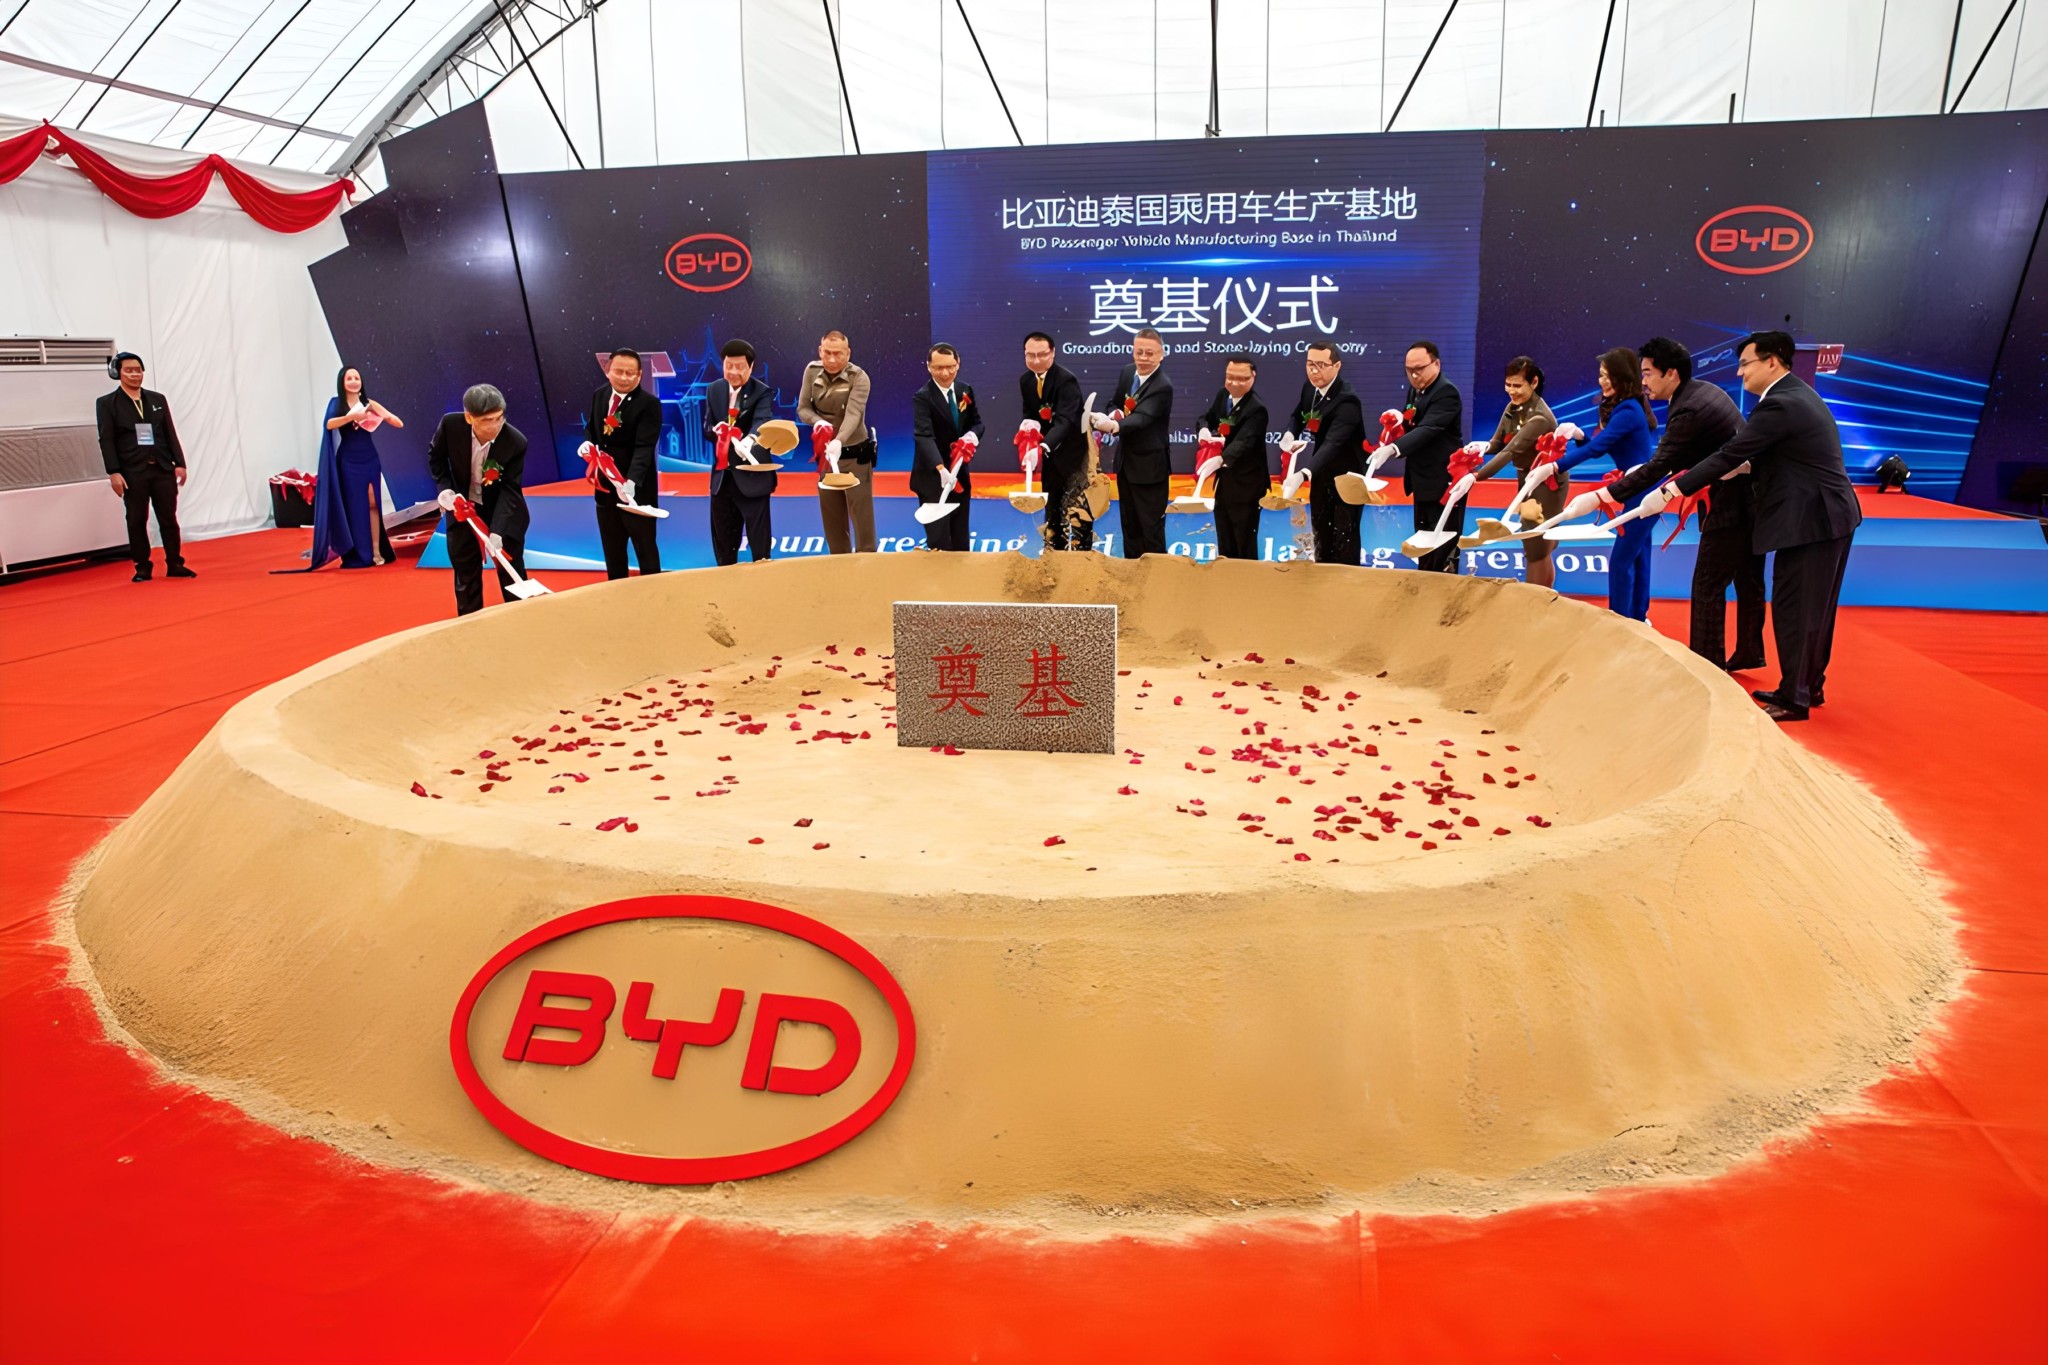 Участники присутствуют на церемонии закладки фундамента производственной базы BYD по выпуску легковых автомобилей в Районге, Таиланд, 10 марта 2023 года. (Синьхуа / Ван Тэн)